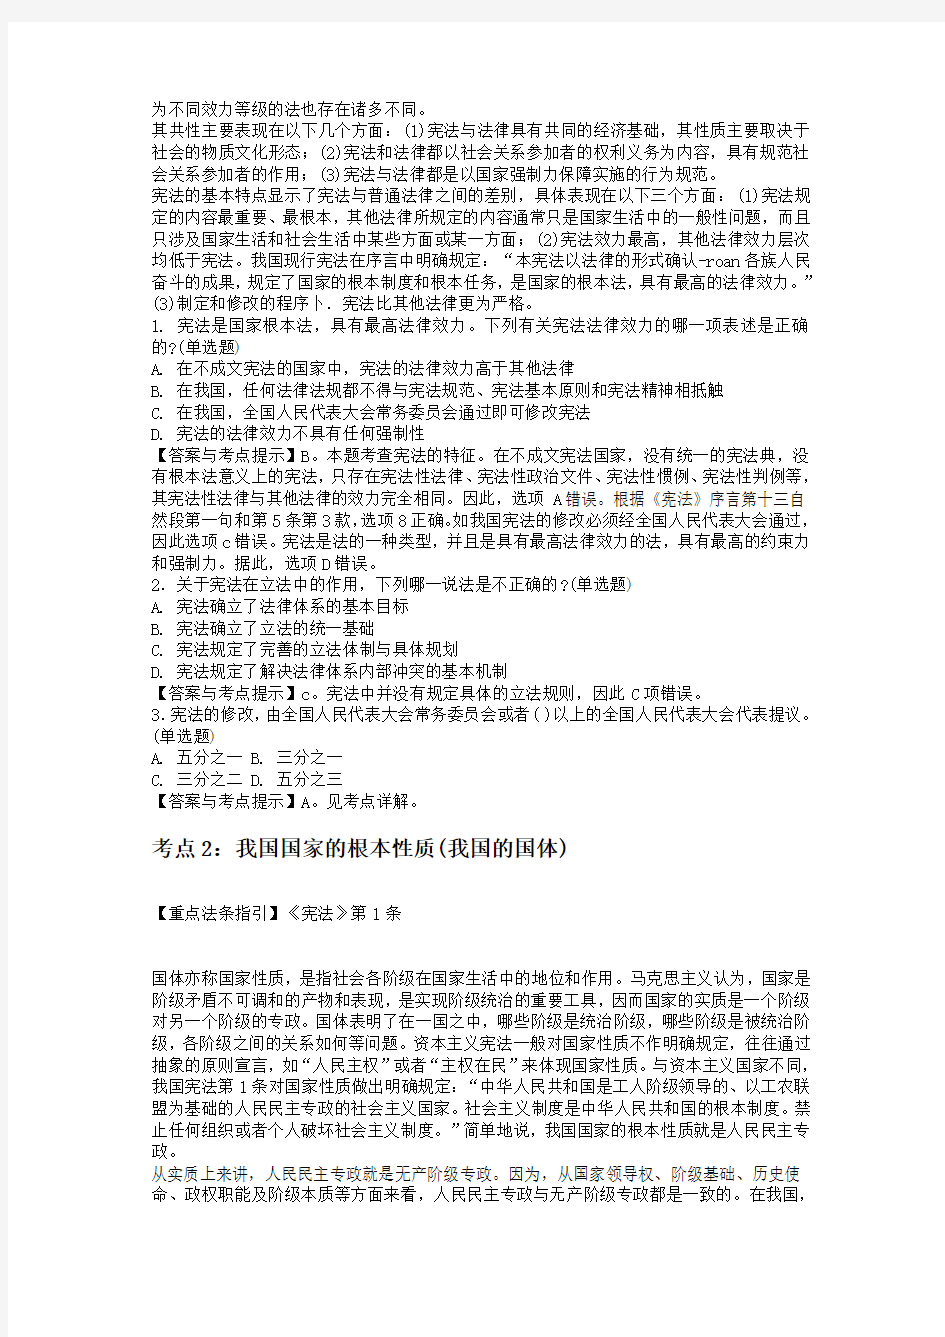 公安招警考试讲义4《中华人民共和国宪法》系统考点